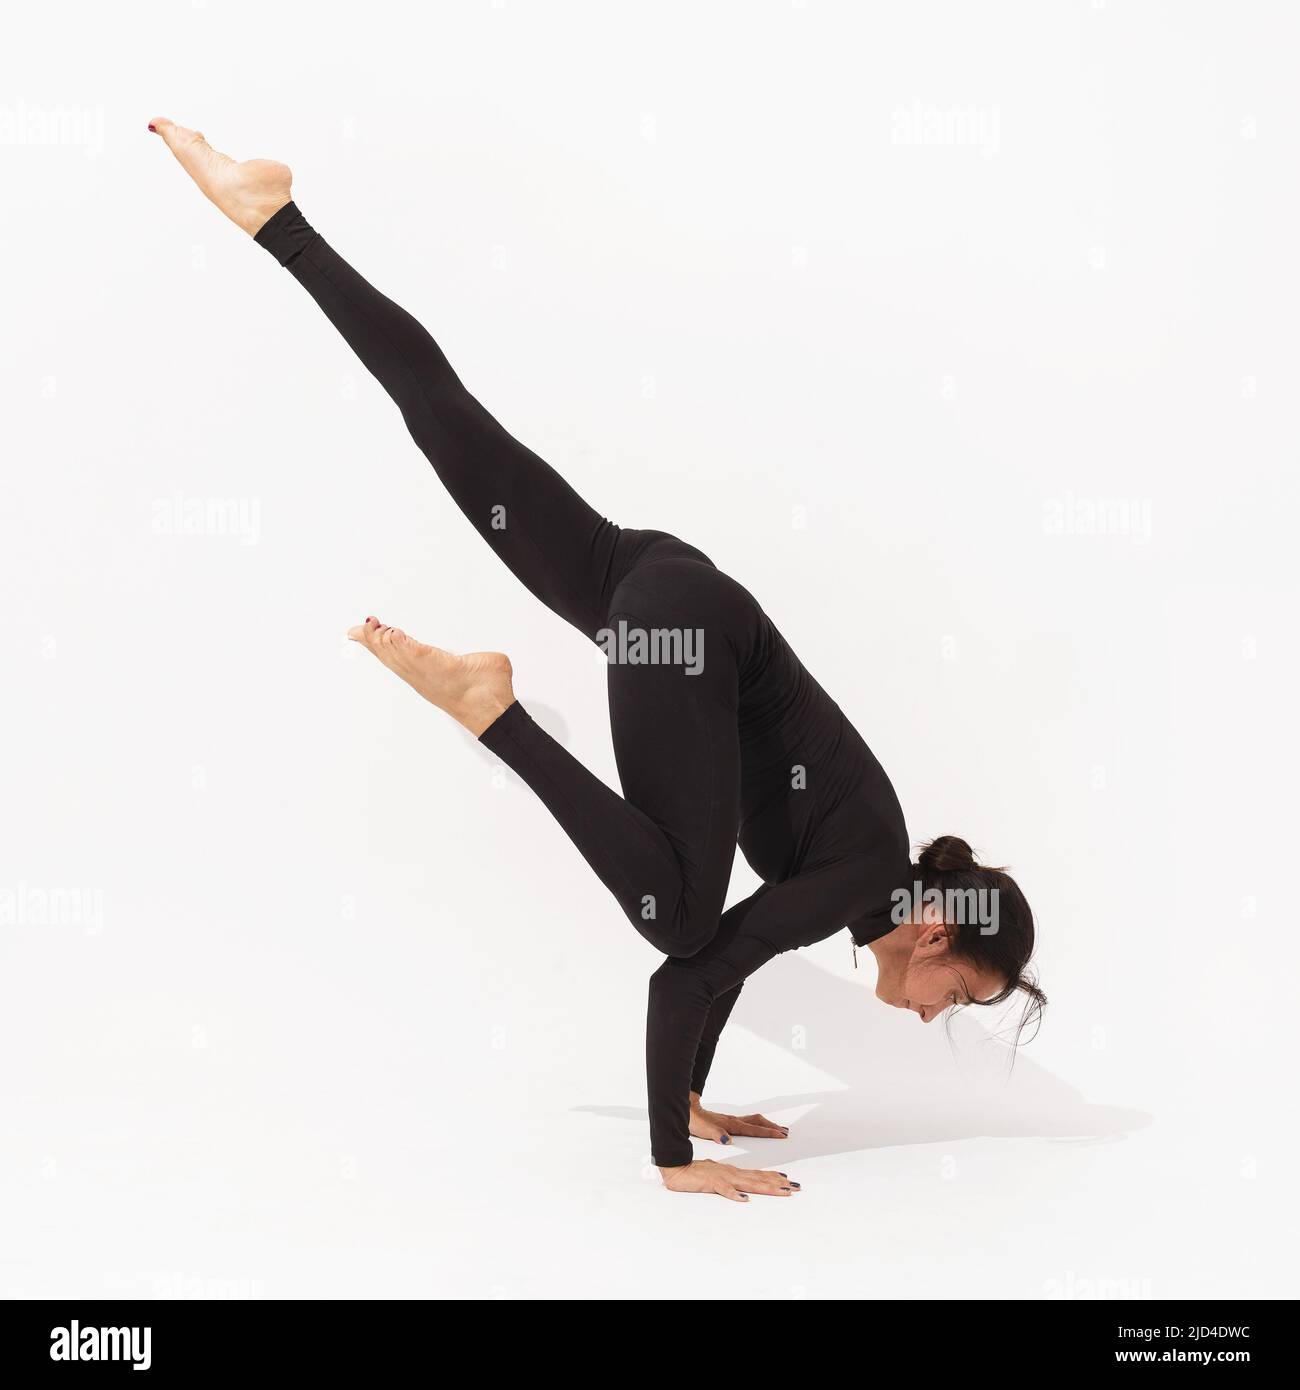 Mujer practicando yoga, realiza el ejercicio Eka Pada Bakasana, la grúa pose con la pierna estirada, ejercitando en negro ropa deportiva sobre un fondo blanco Foto de stock